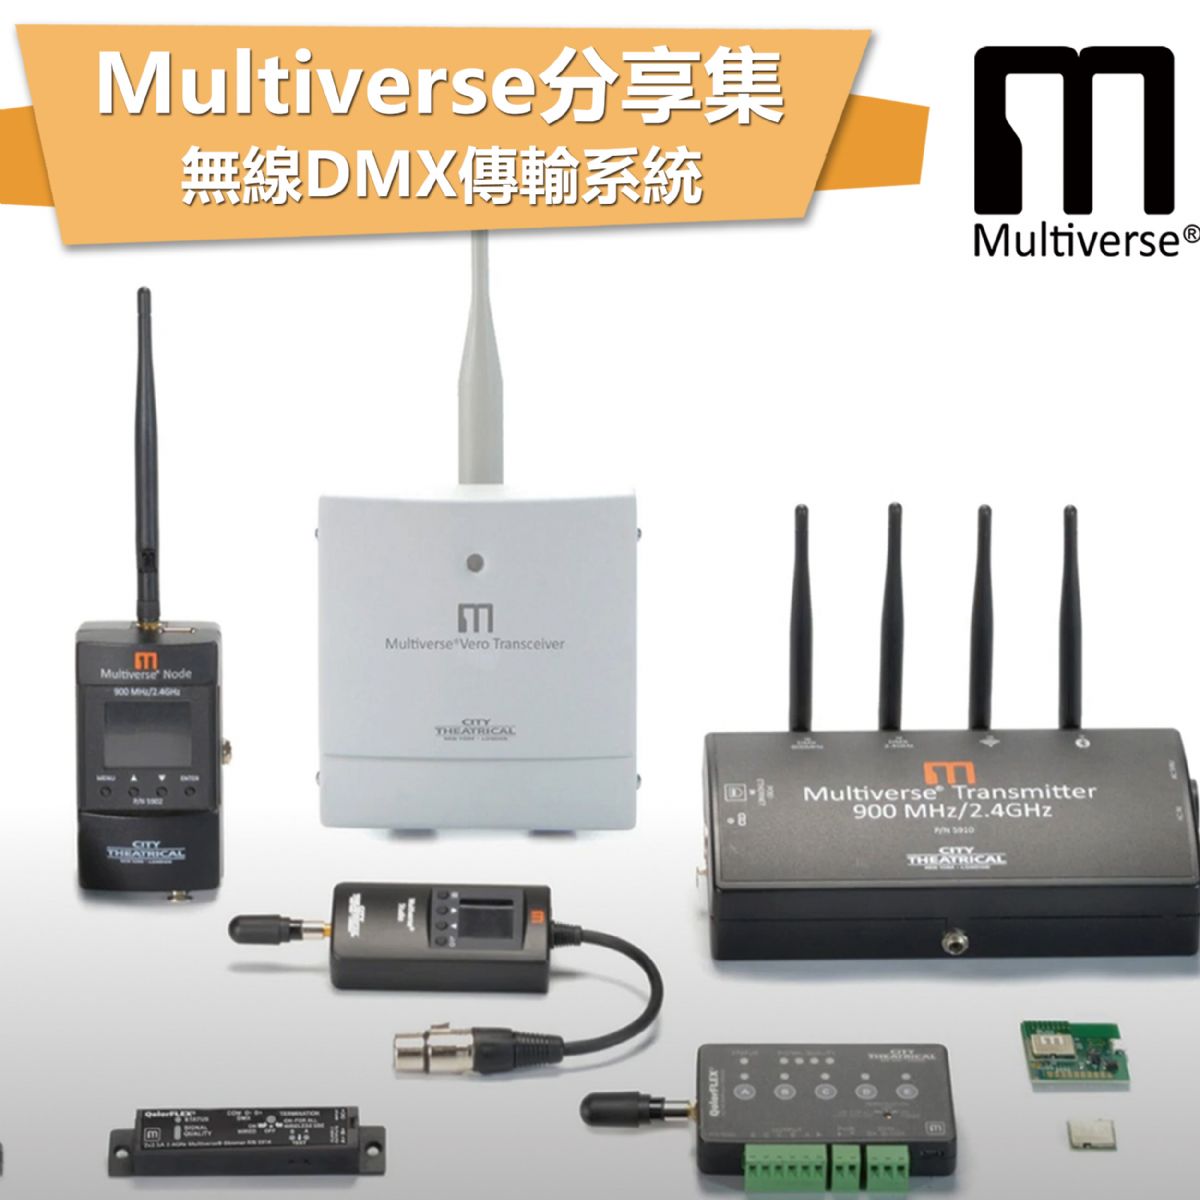 Multiverse小知識 無線DMX傳輸系統